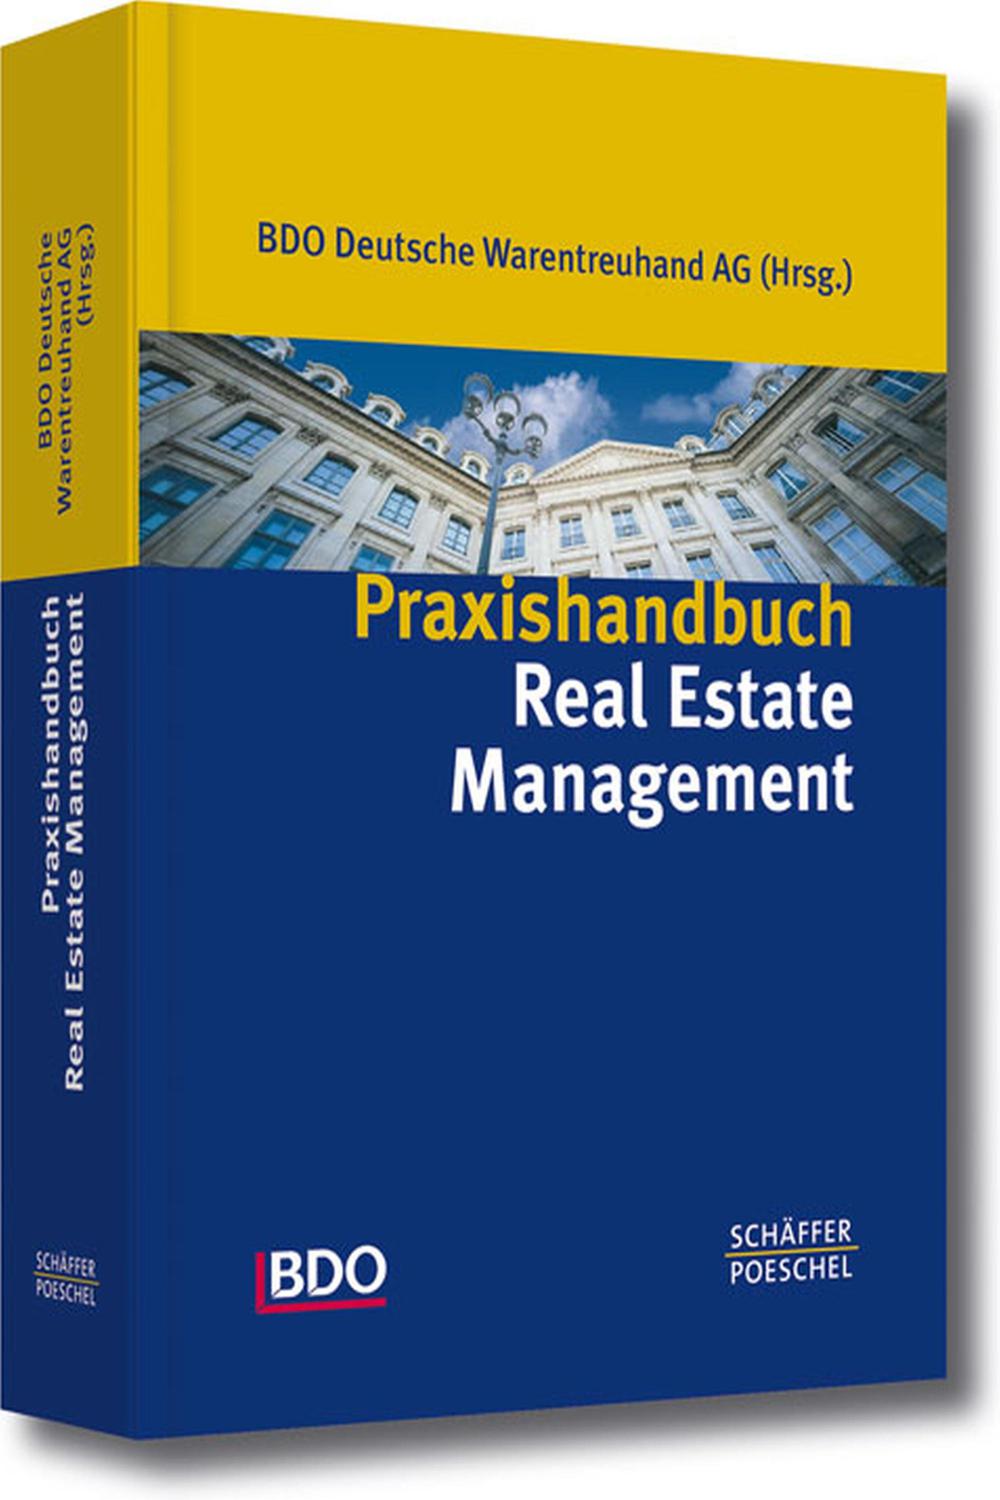 Praxishandbuch Real Estate Management - BDO Deutsche Warentreuhand AG